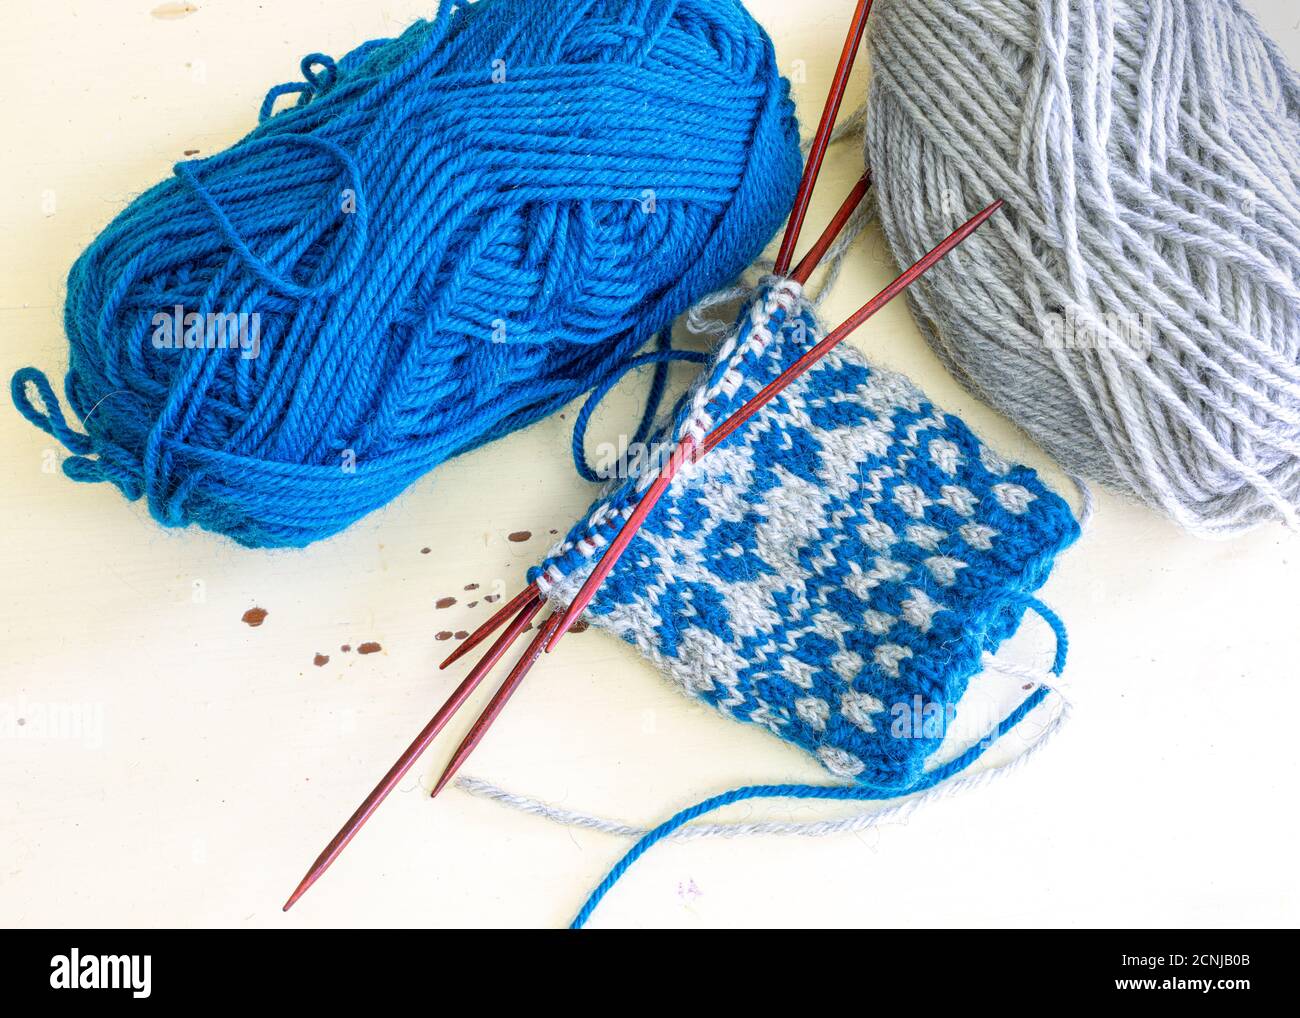 Colorazioni intrecciate a maglia ispirate alla Scandinavia utilizzate per la produzione dei mitens. Foto Stock